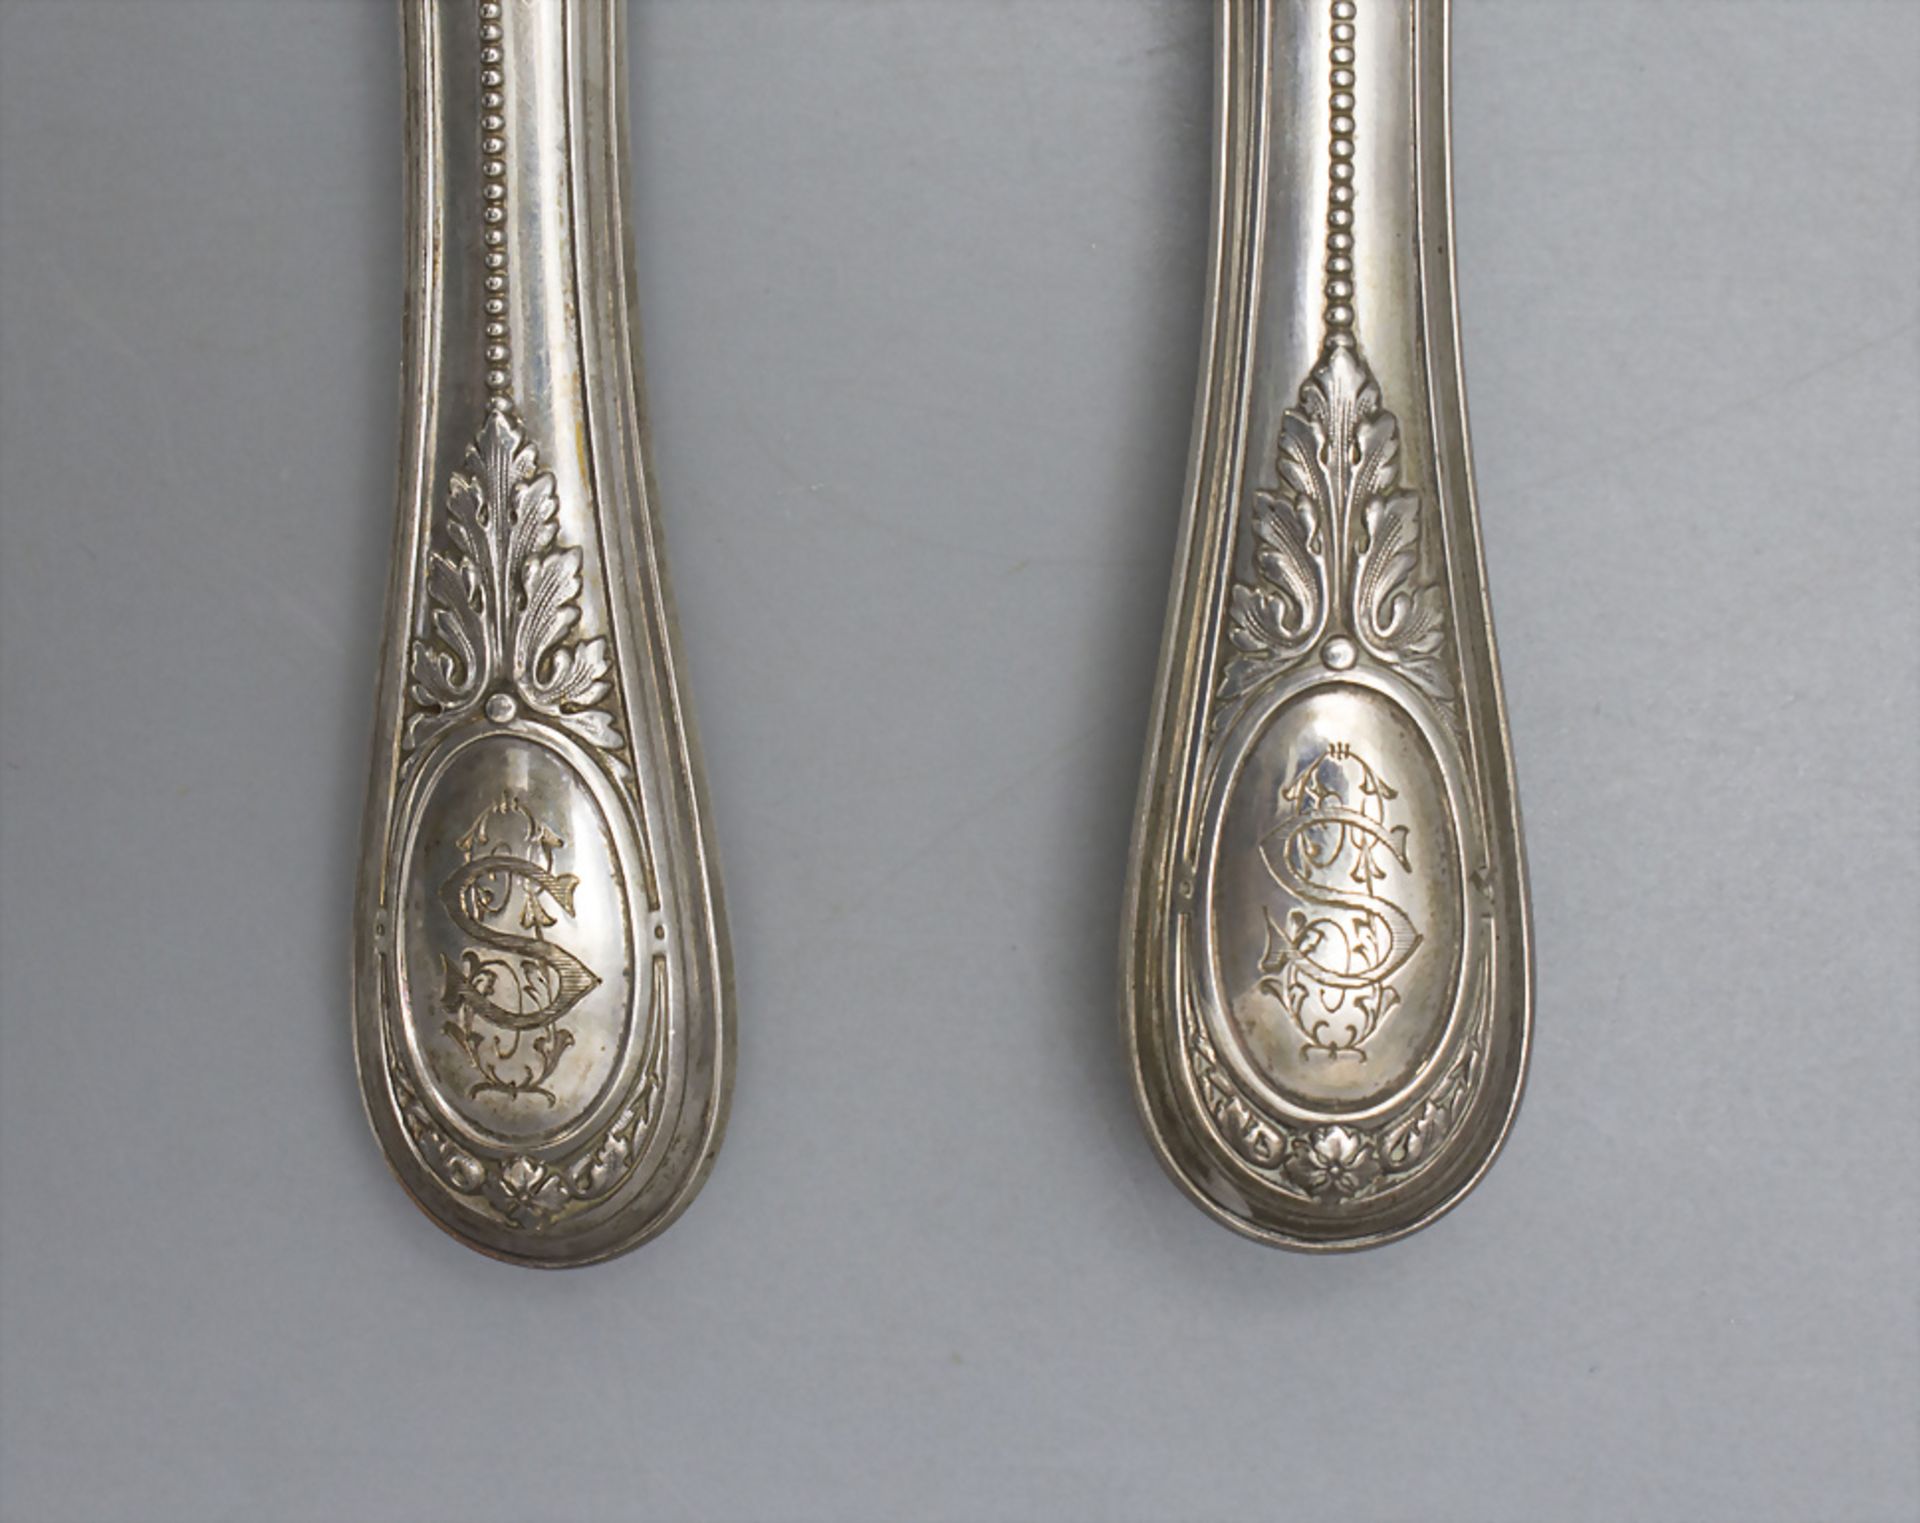 Fisch-Vorlegebesteck / A silver fish serving cutlery, Hènin & Cie., Paris, nach 1896 - Image 3 of 5